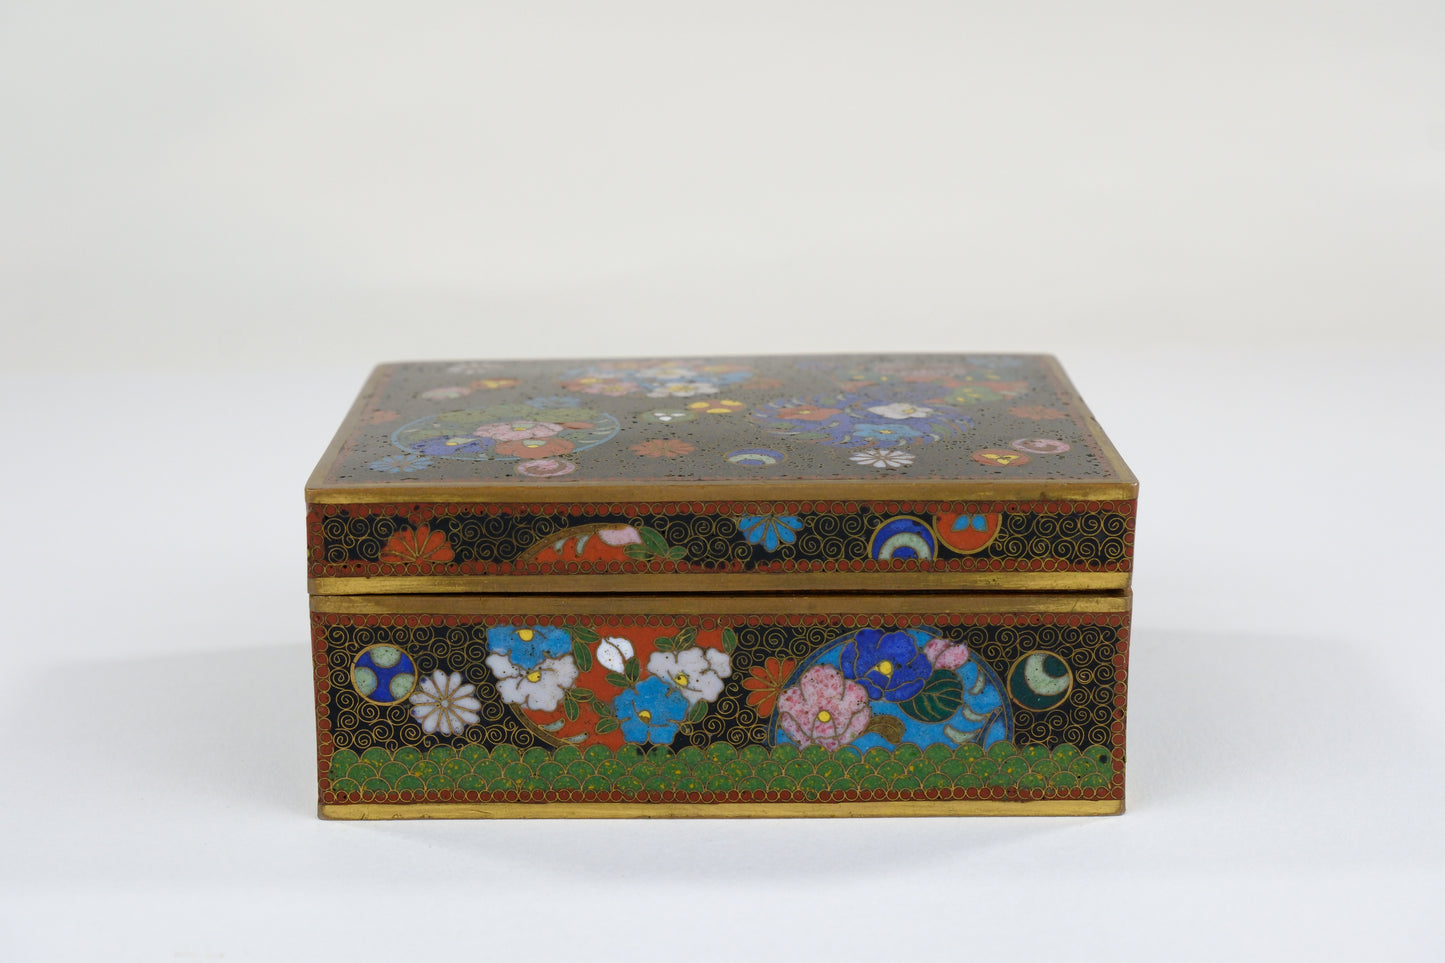 Antique Chinese c1910's Cloisonné Box w/ Floral Motif on Black 4.25”